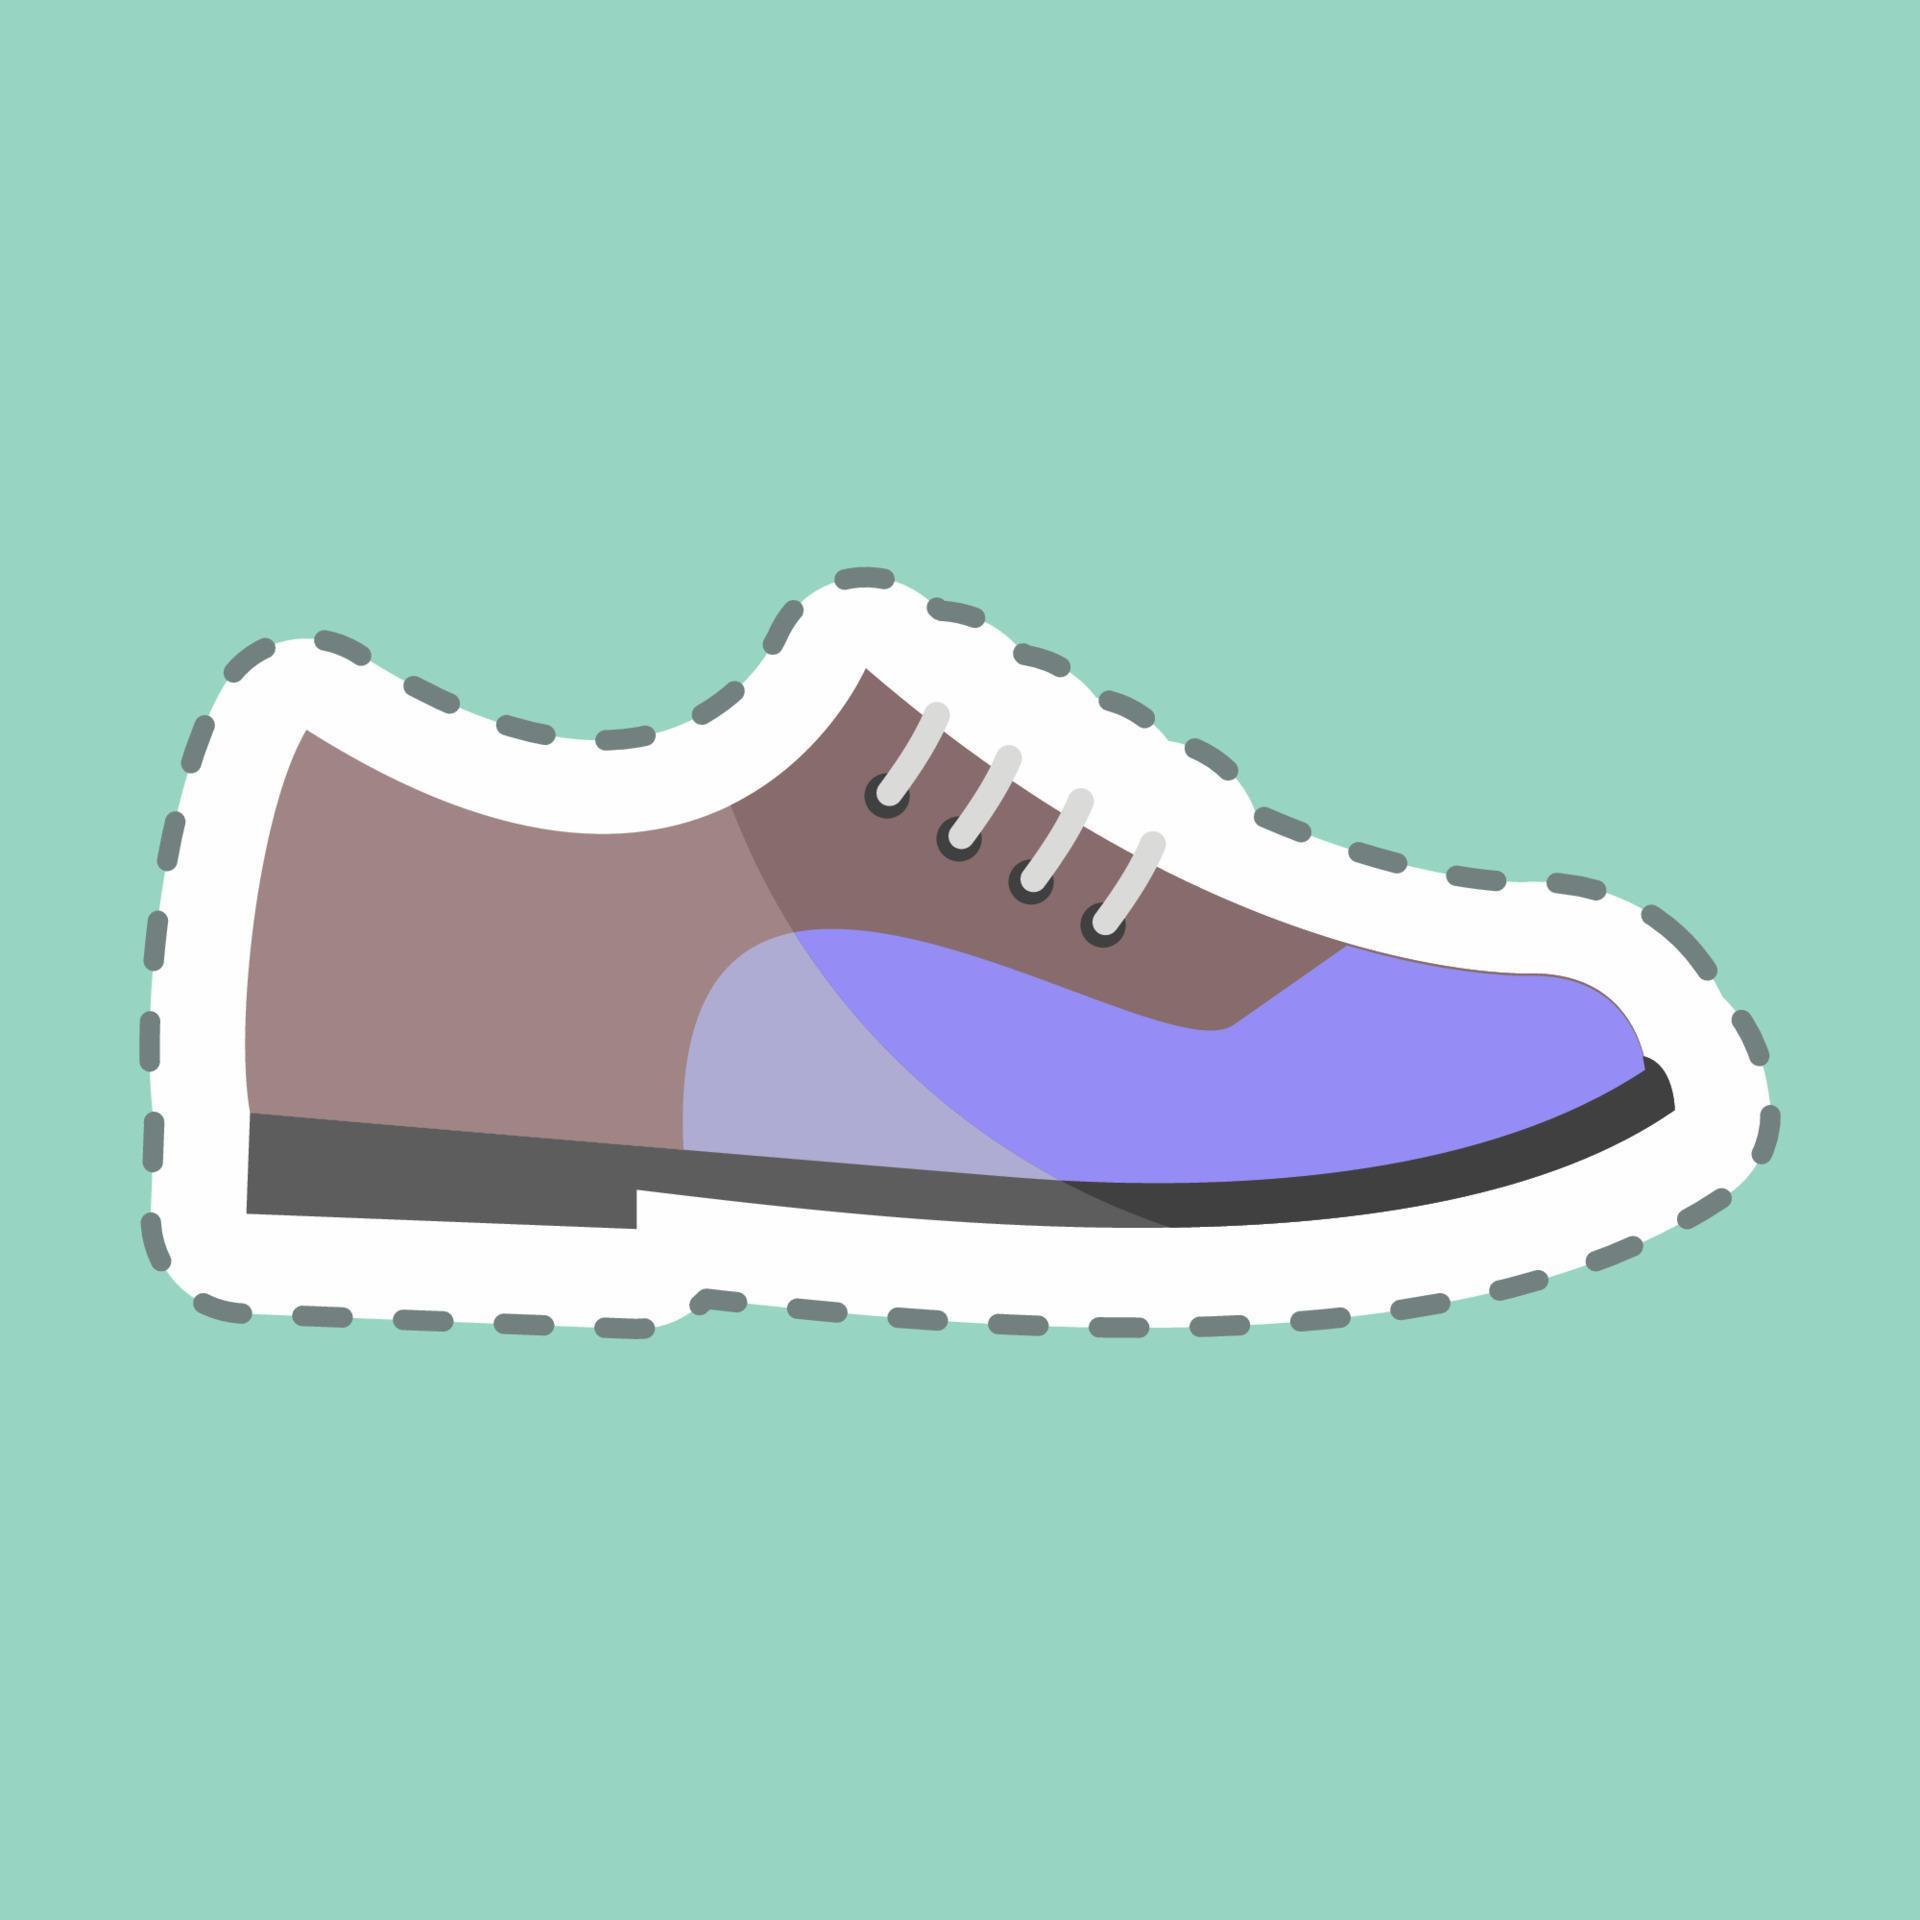 scarpe formali con taglio adesivo. adatto per accessori da uomo simbolo. design semplice modificabile. vettore del modello di progettazione. semplice illustrazione del simbolo